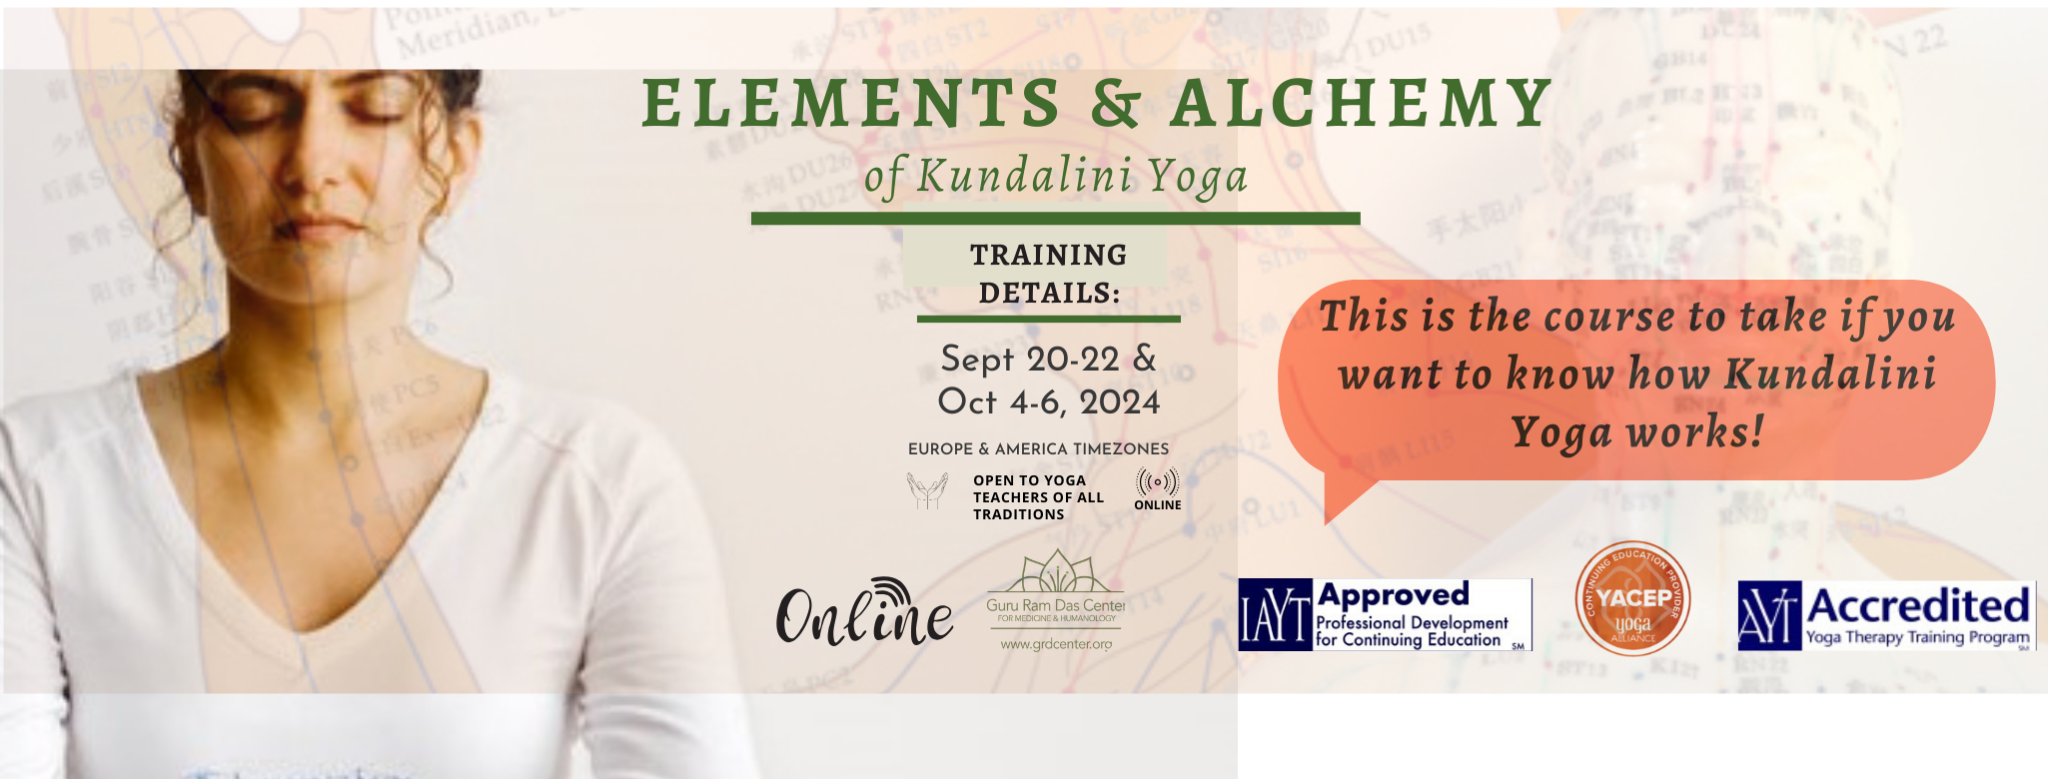 elements and alchemy of kundalini yoga